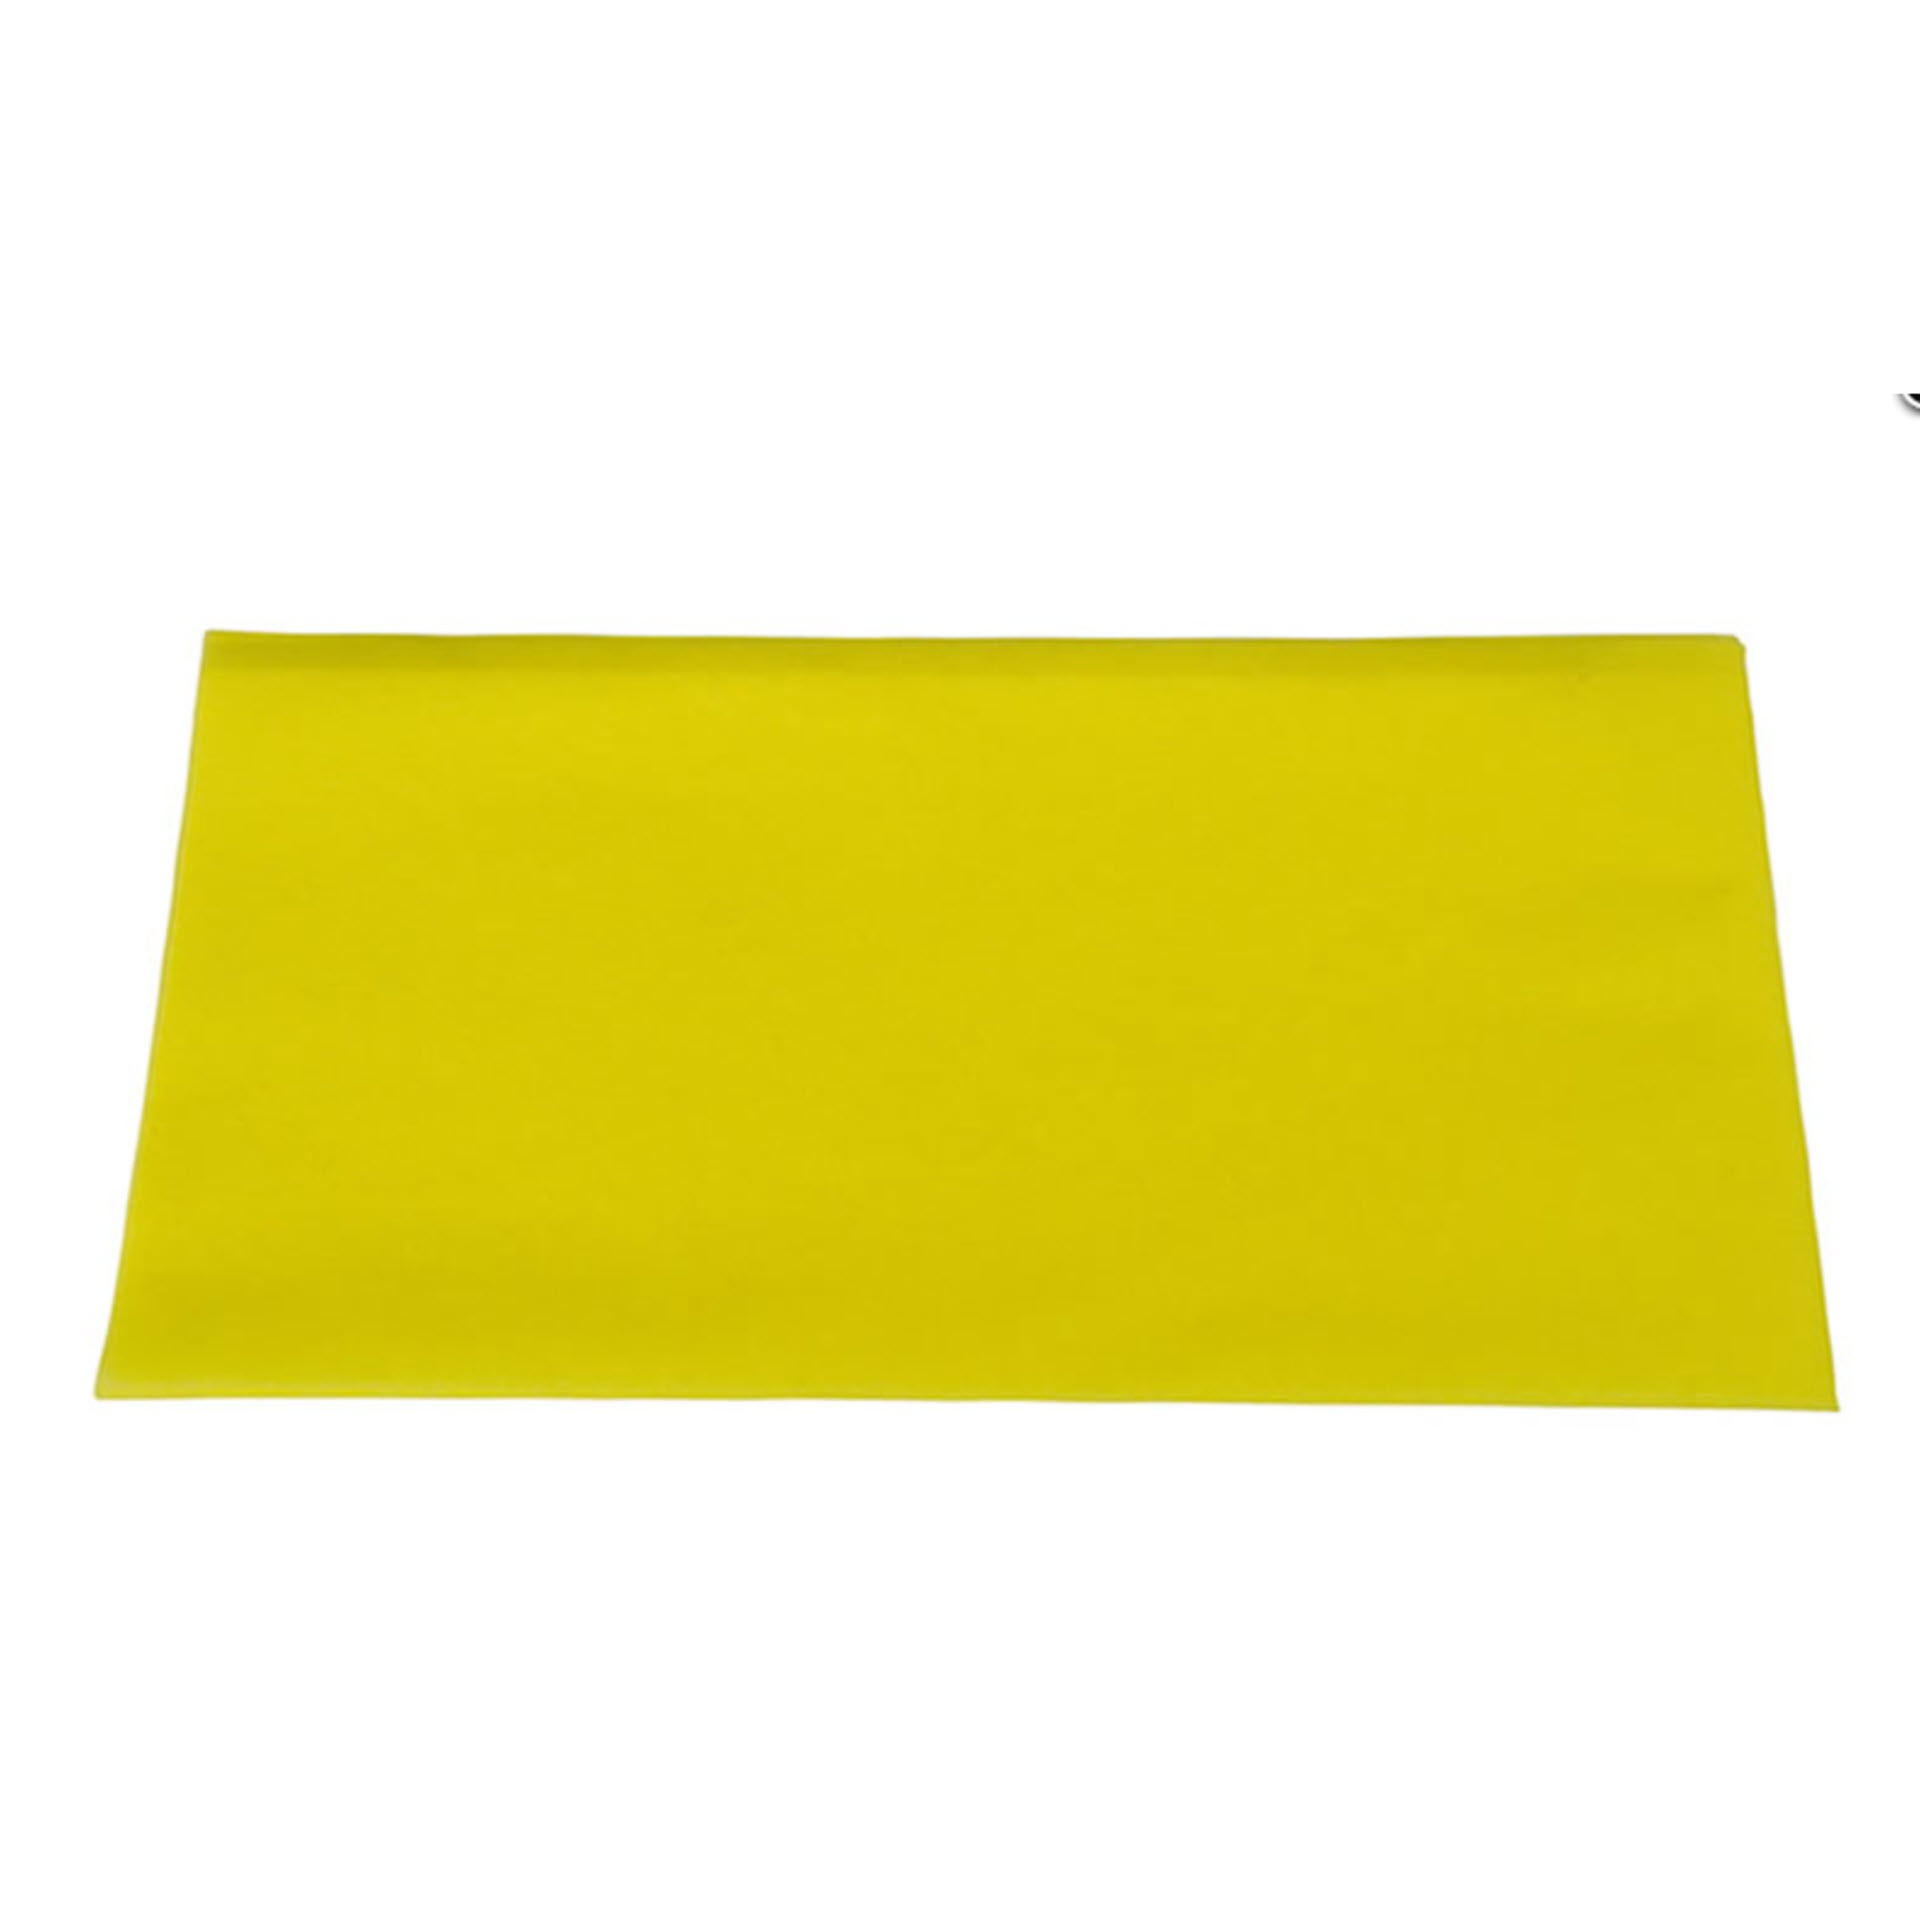 Sito Staubbindetuch gelb 60x30cm (100Stück/Packung) mit Imprägnierung